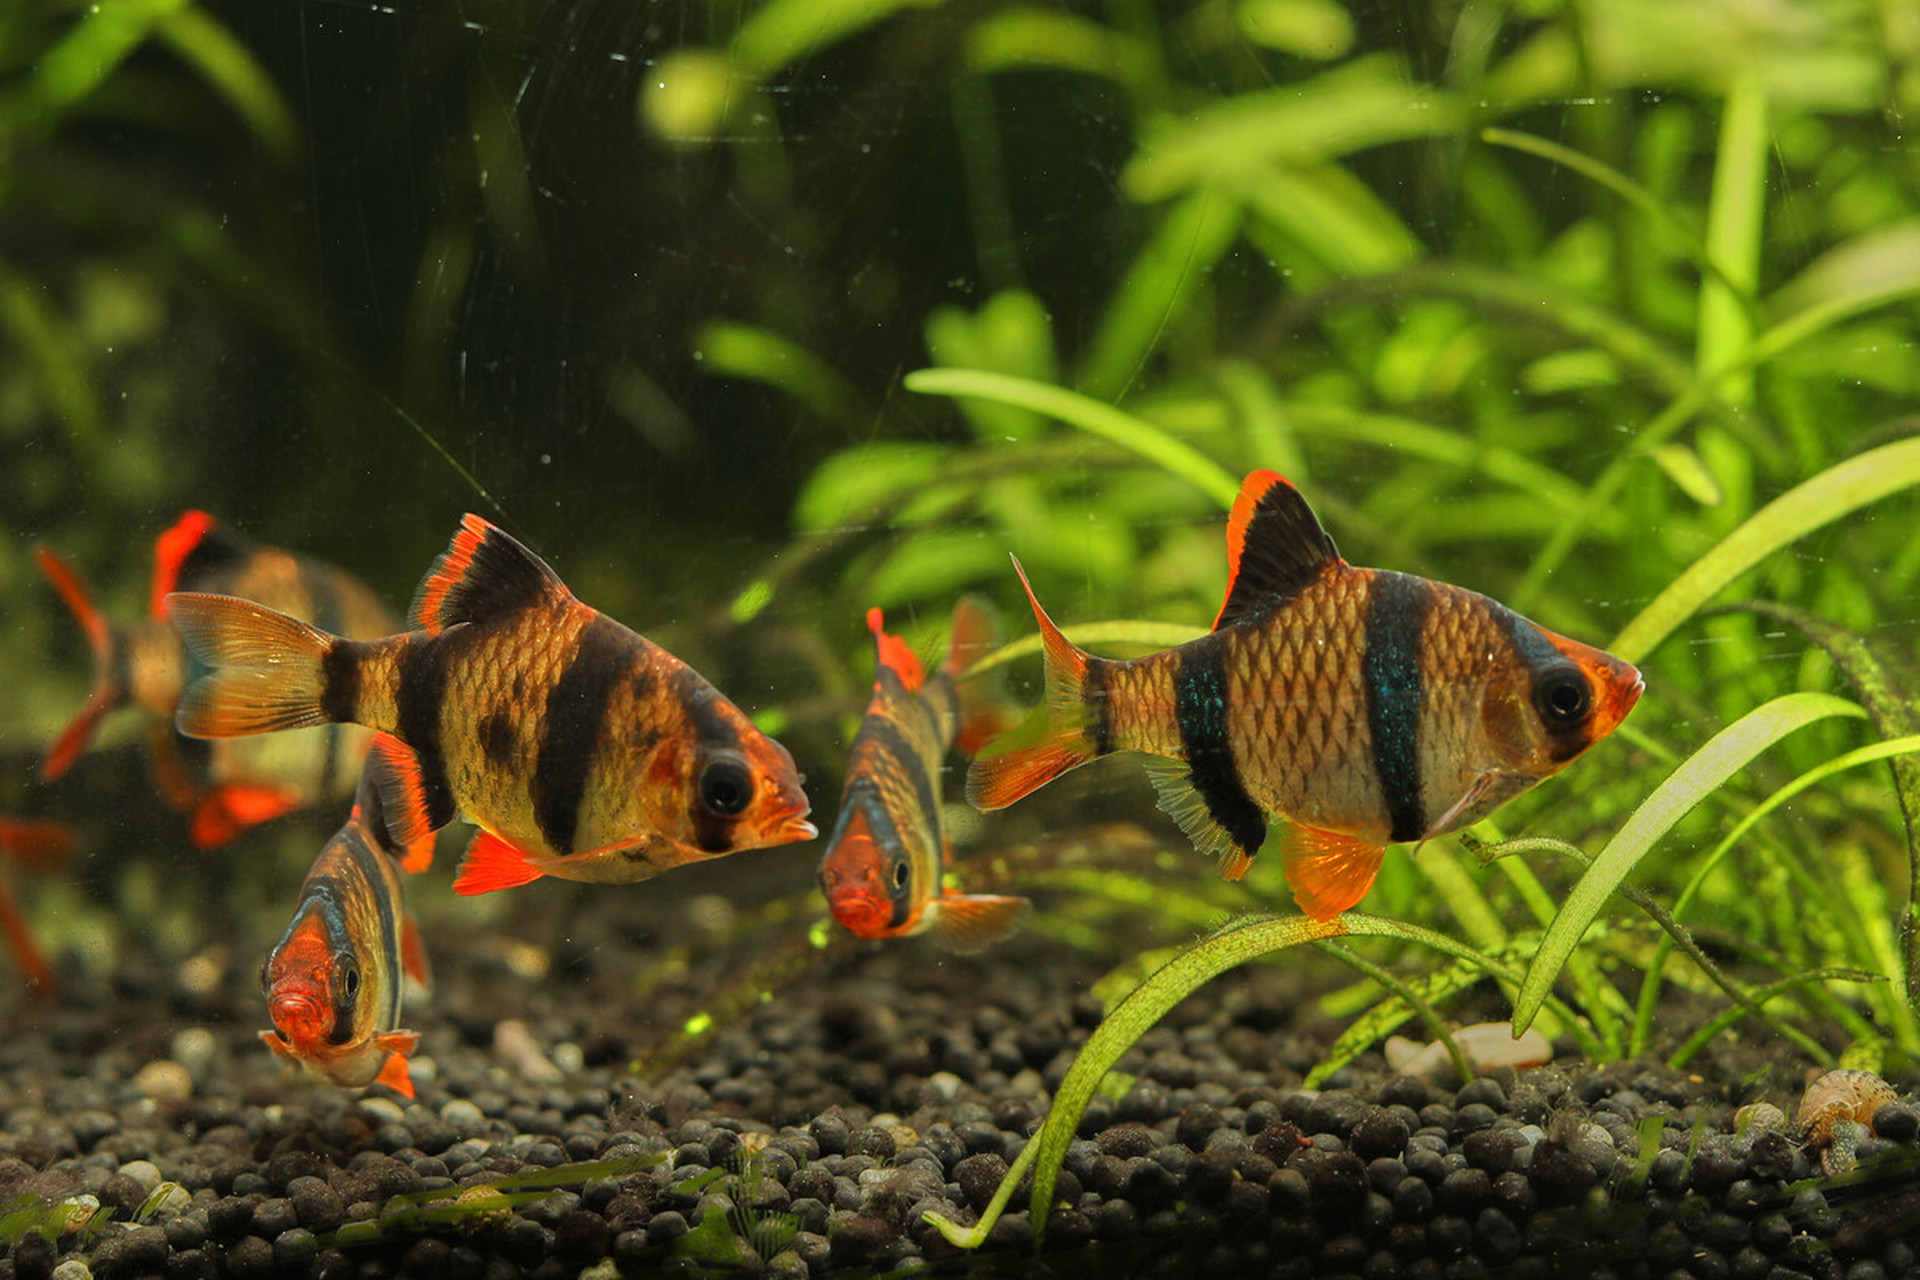 虎皮鱼体色基调为浅黄色,带有红色斑纹和小点,从头至尾有4条垂直的